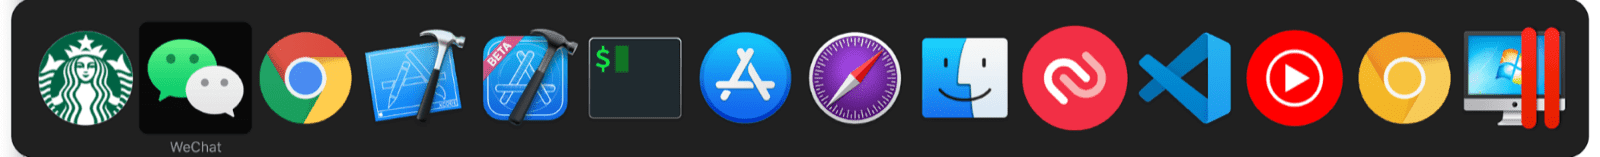 تعویض‌کننده چند وظیفه‌ای macOS شامل برنامه‌های کوچک در کنار برنامه macOS معمولی است.